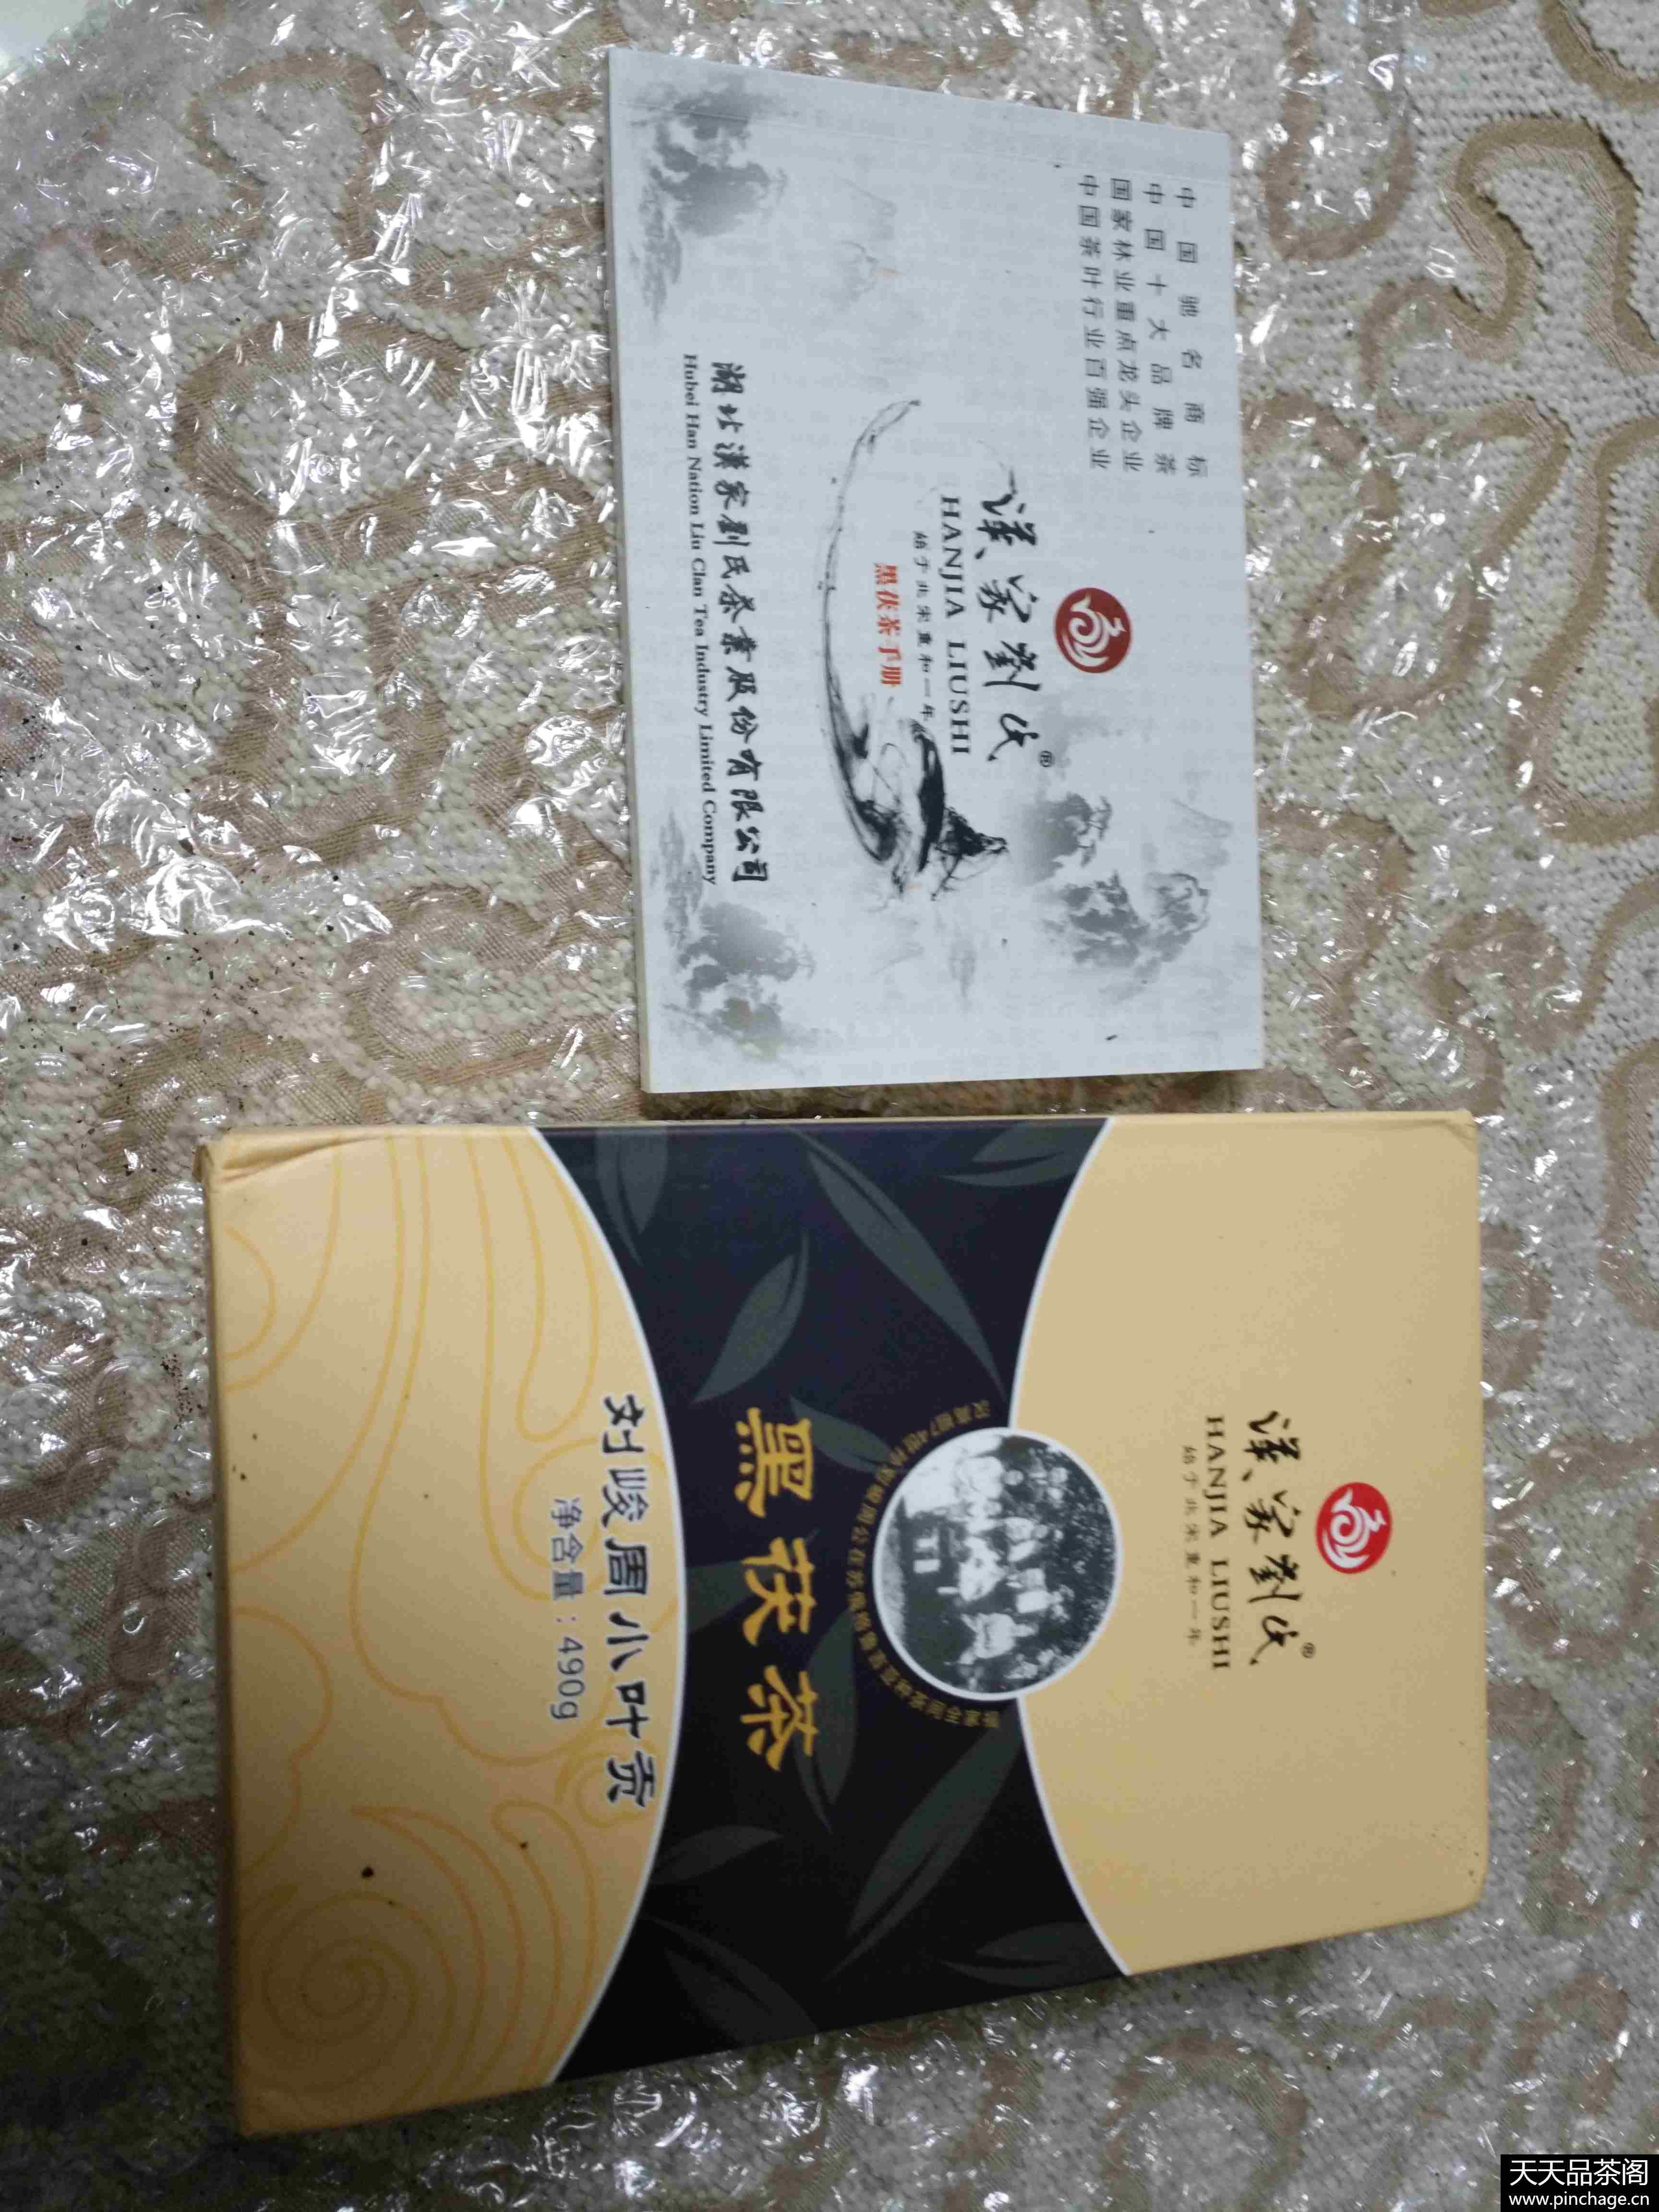 黑茶-汉家刘氏百年老店